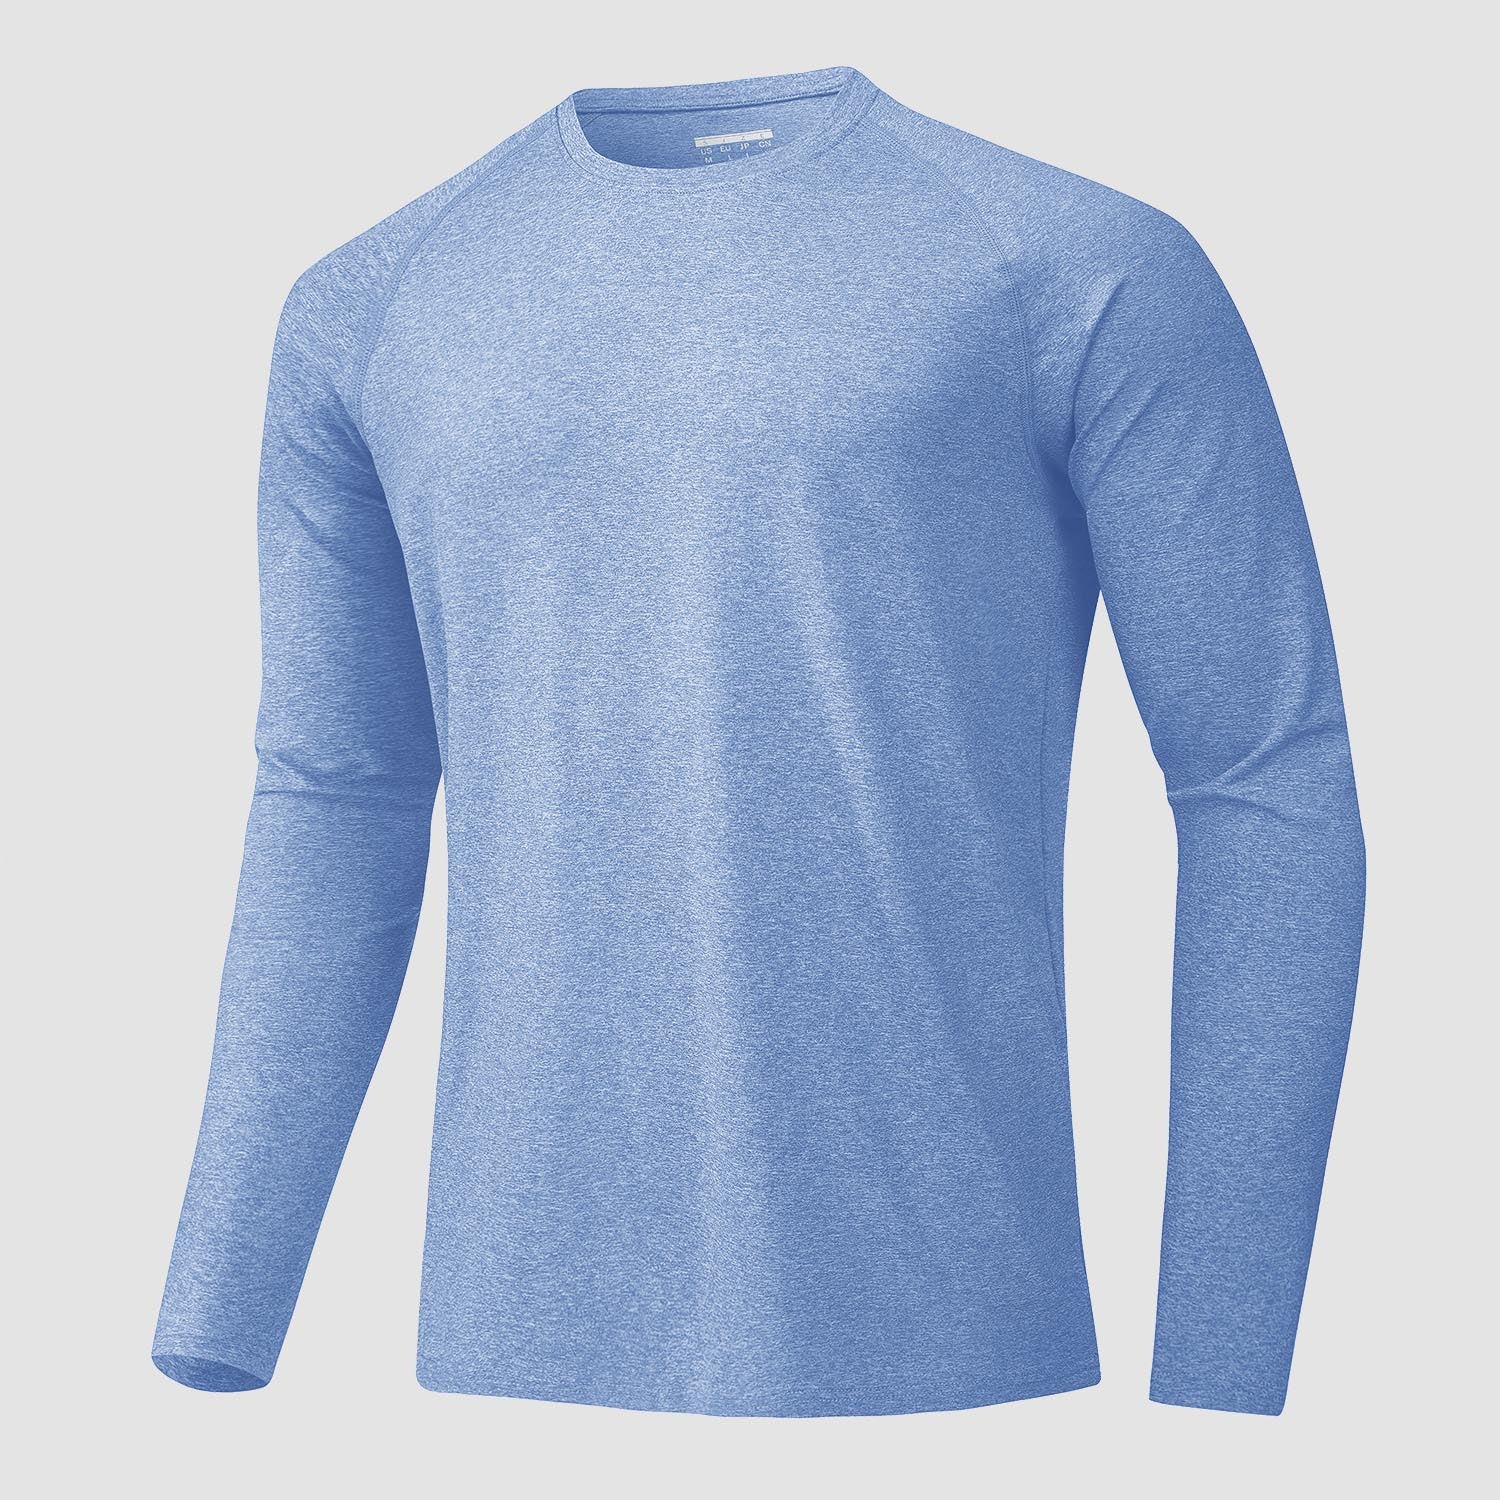 UV sport shirts for men